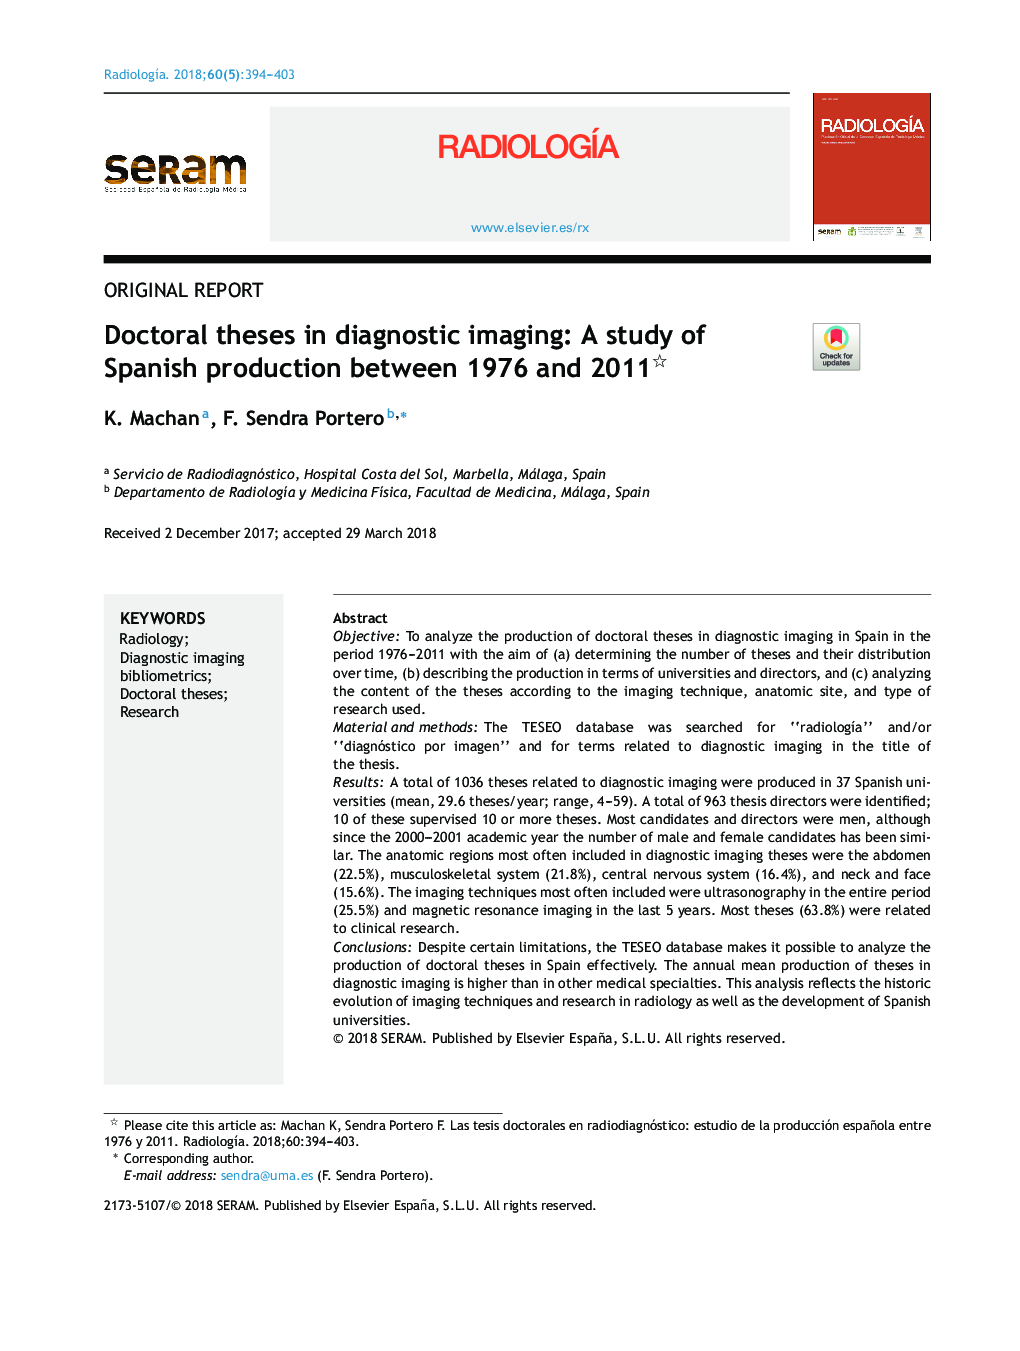 پایان نامه های دکترا در تصویربرداری تشخیصی: مطالعه تولید اسپانیا بین سال های 1976 و 2011